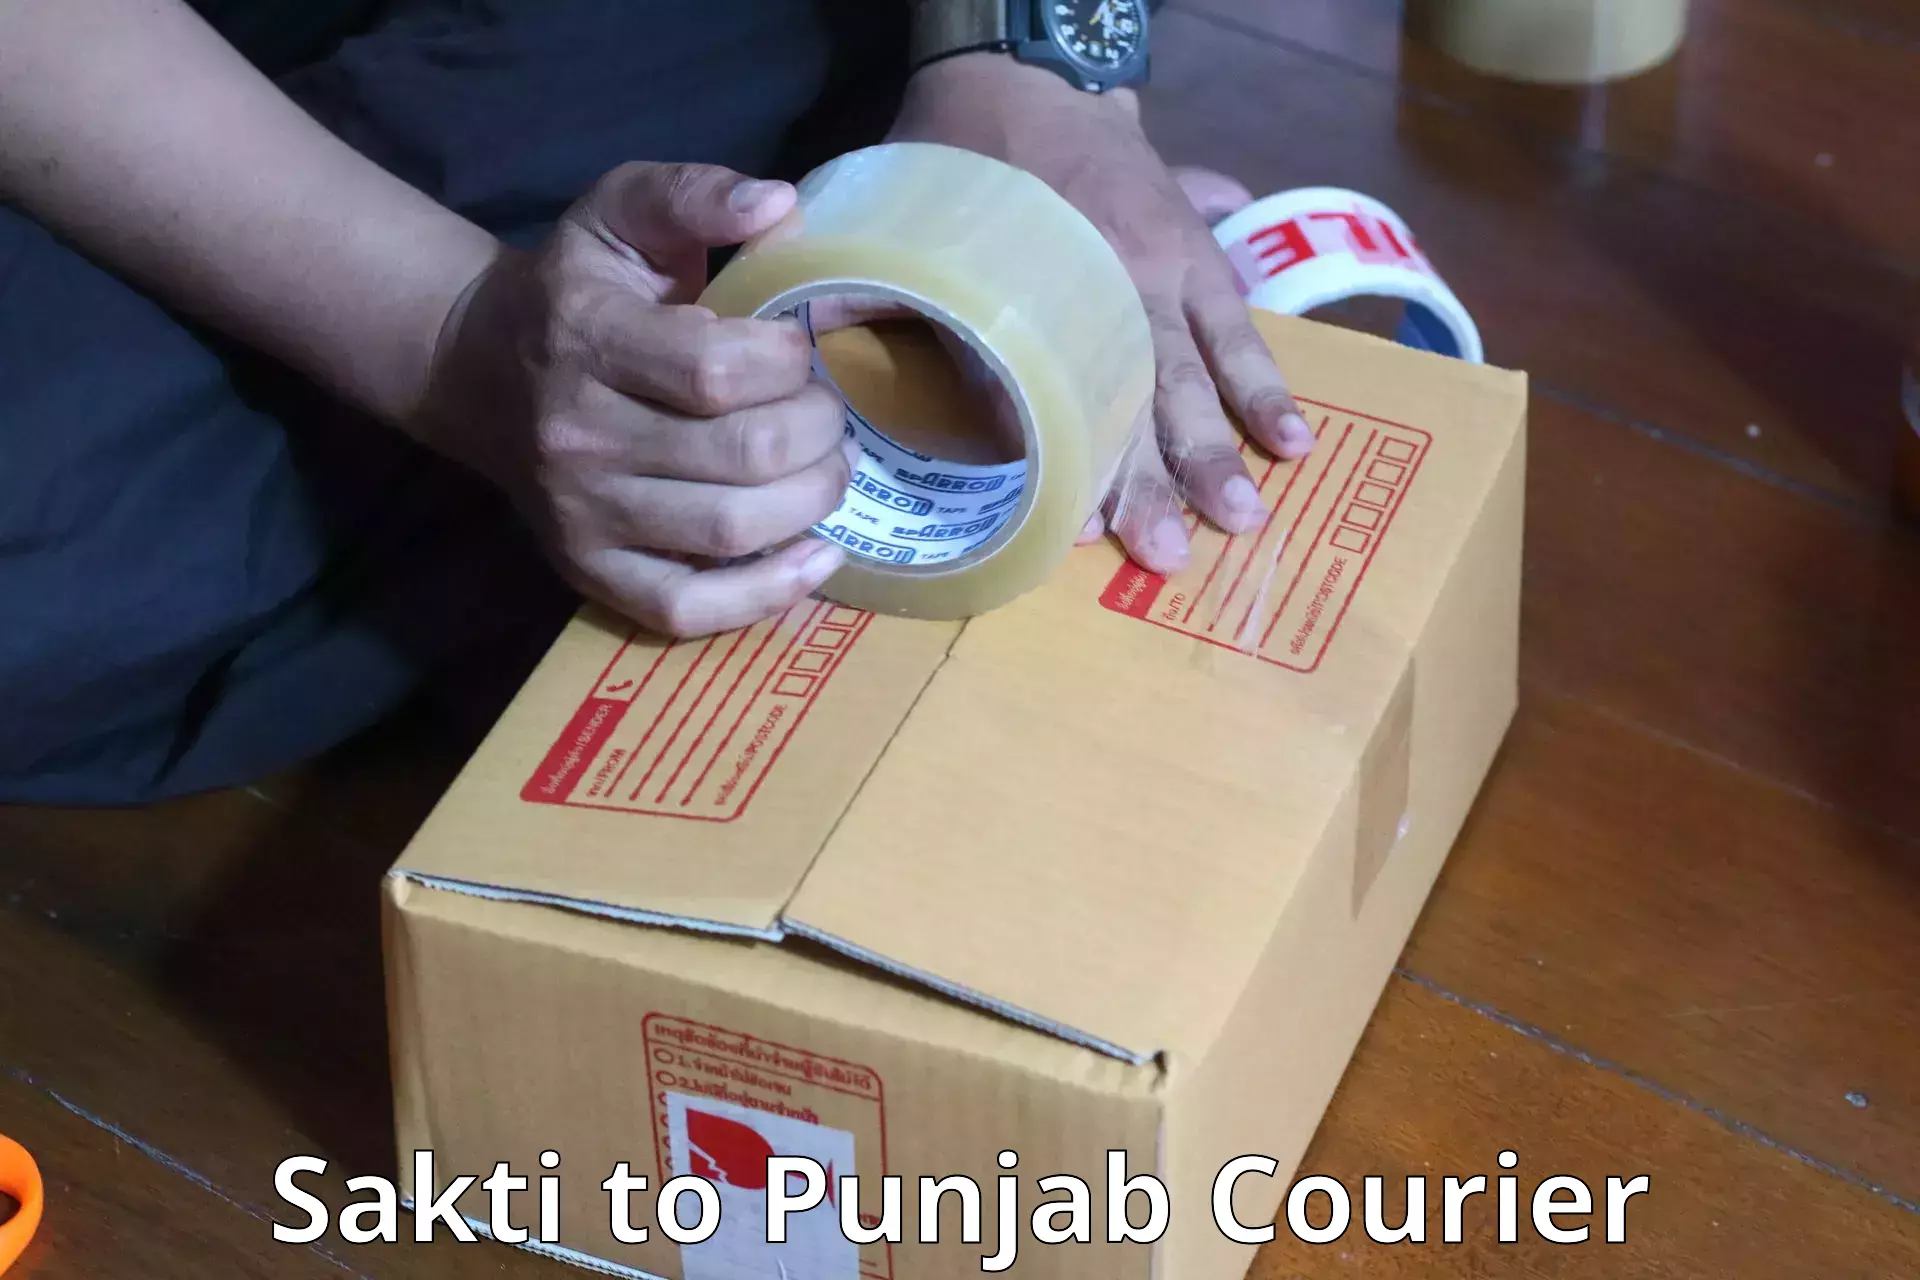 Luggage shipment tracking Sakti to Punjab